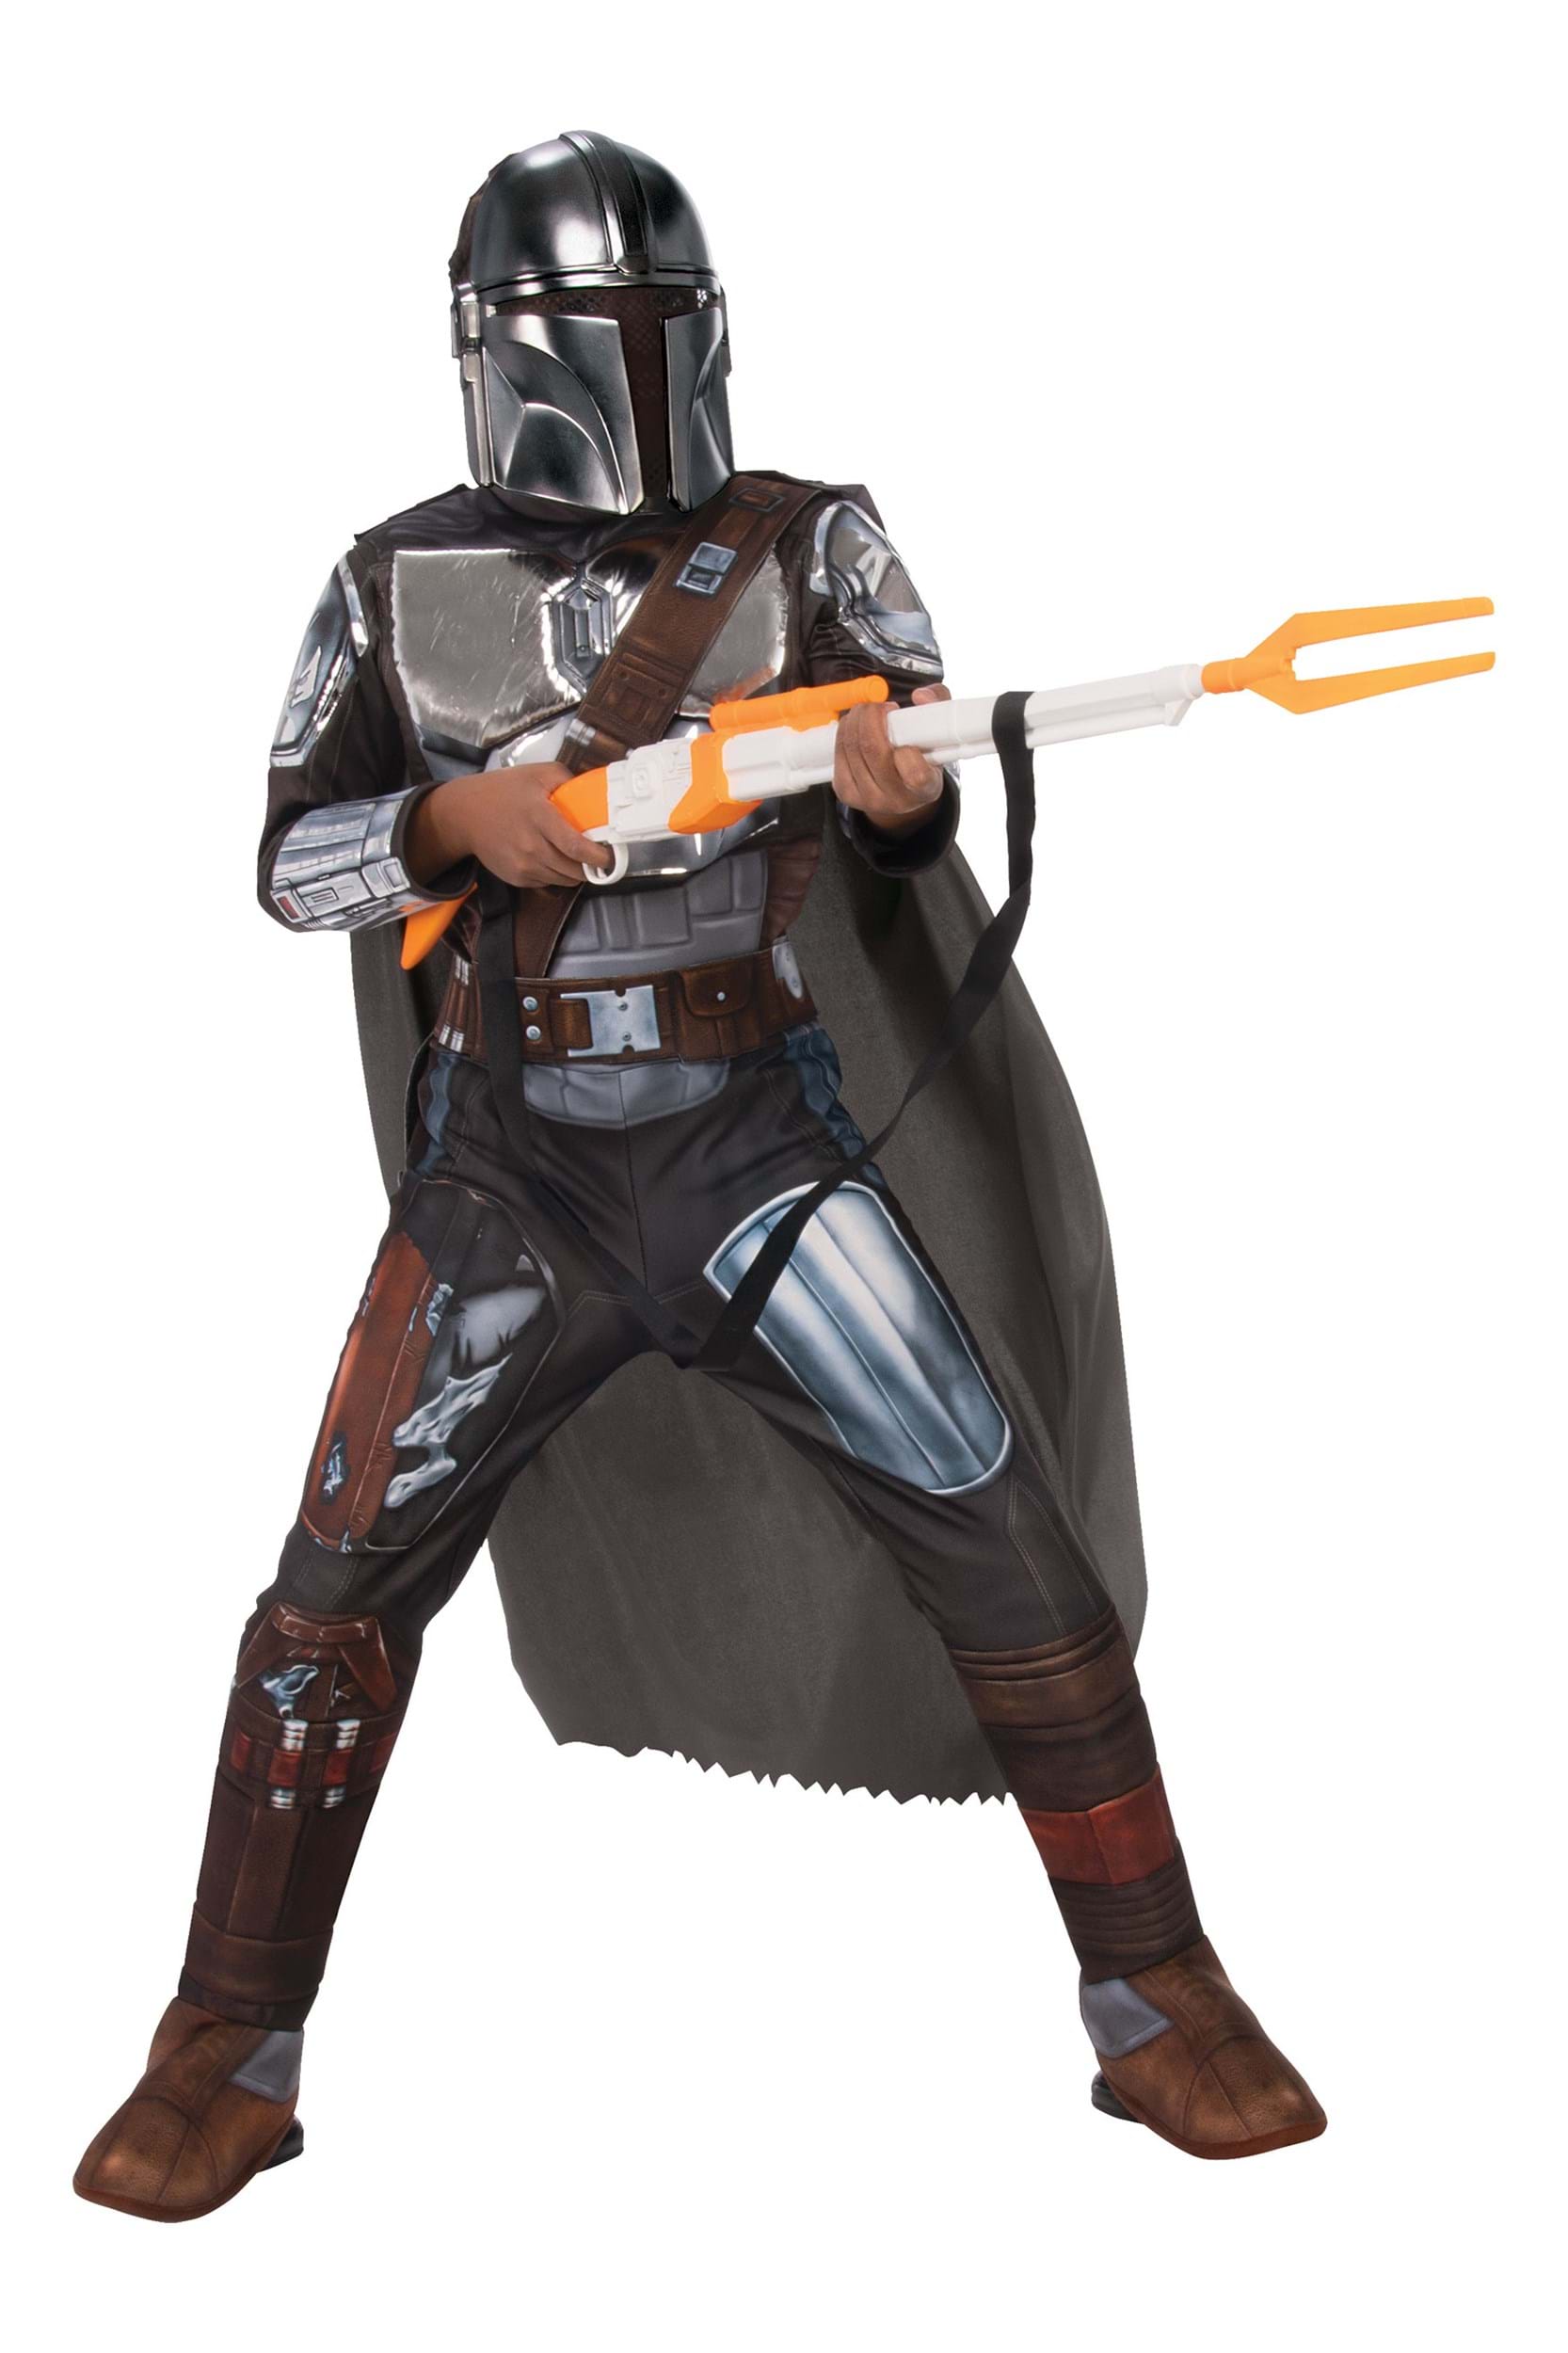 Mandalorian Beskar Armor Costume for Kids